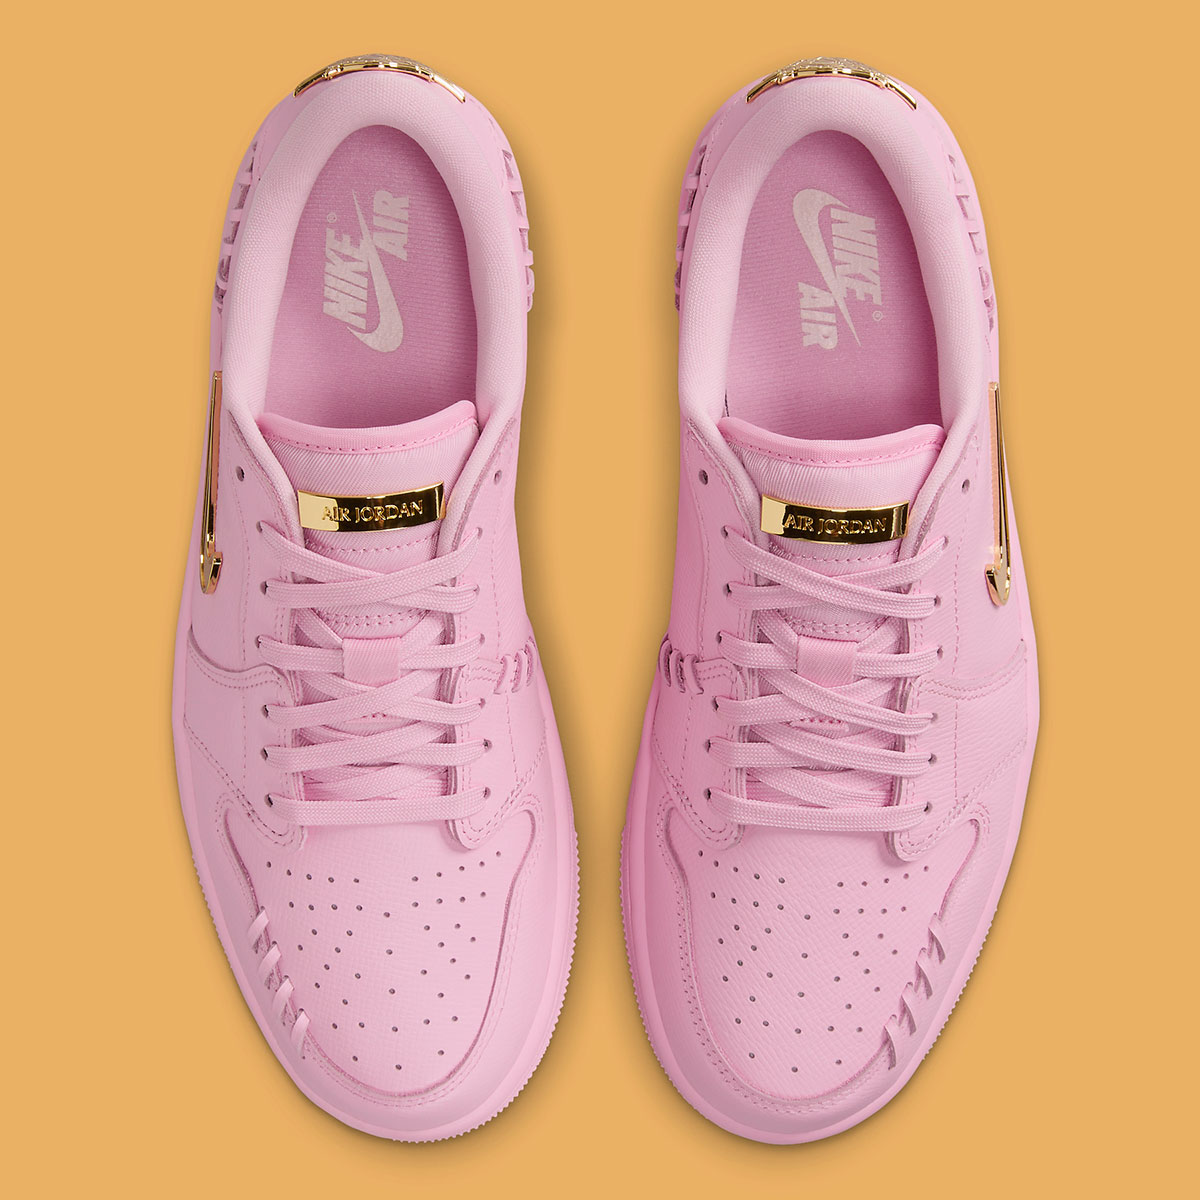 Womens Air Jordan XI Low Citrus Perfect Pink Fn5032 600 4